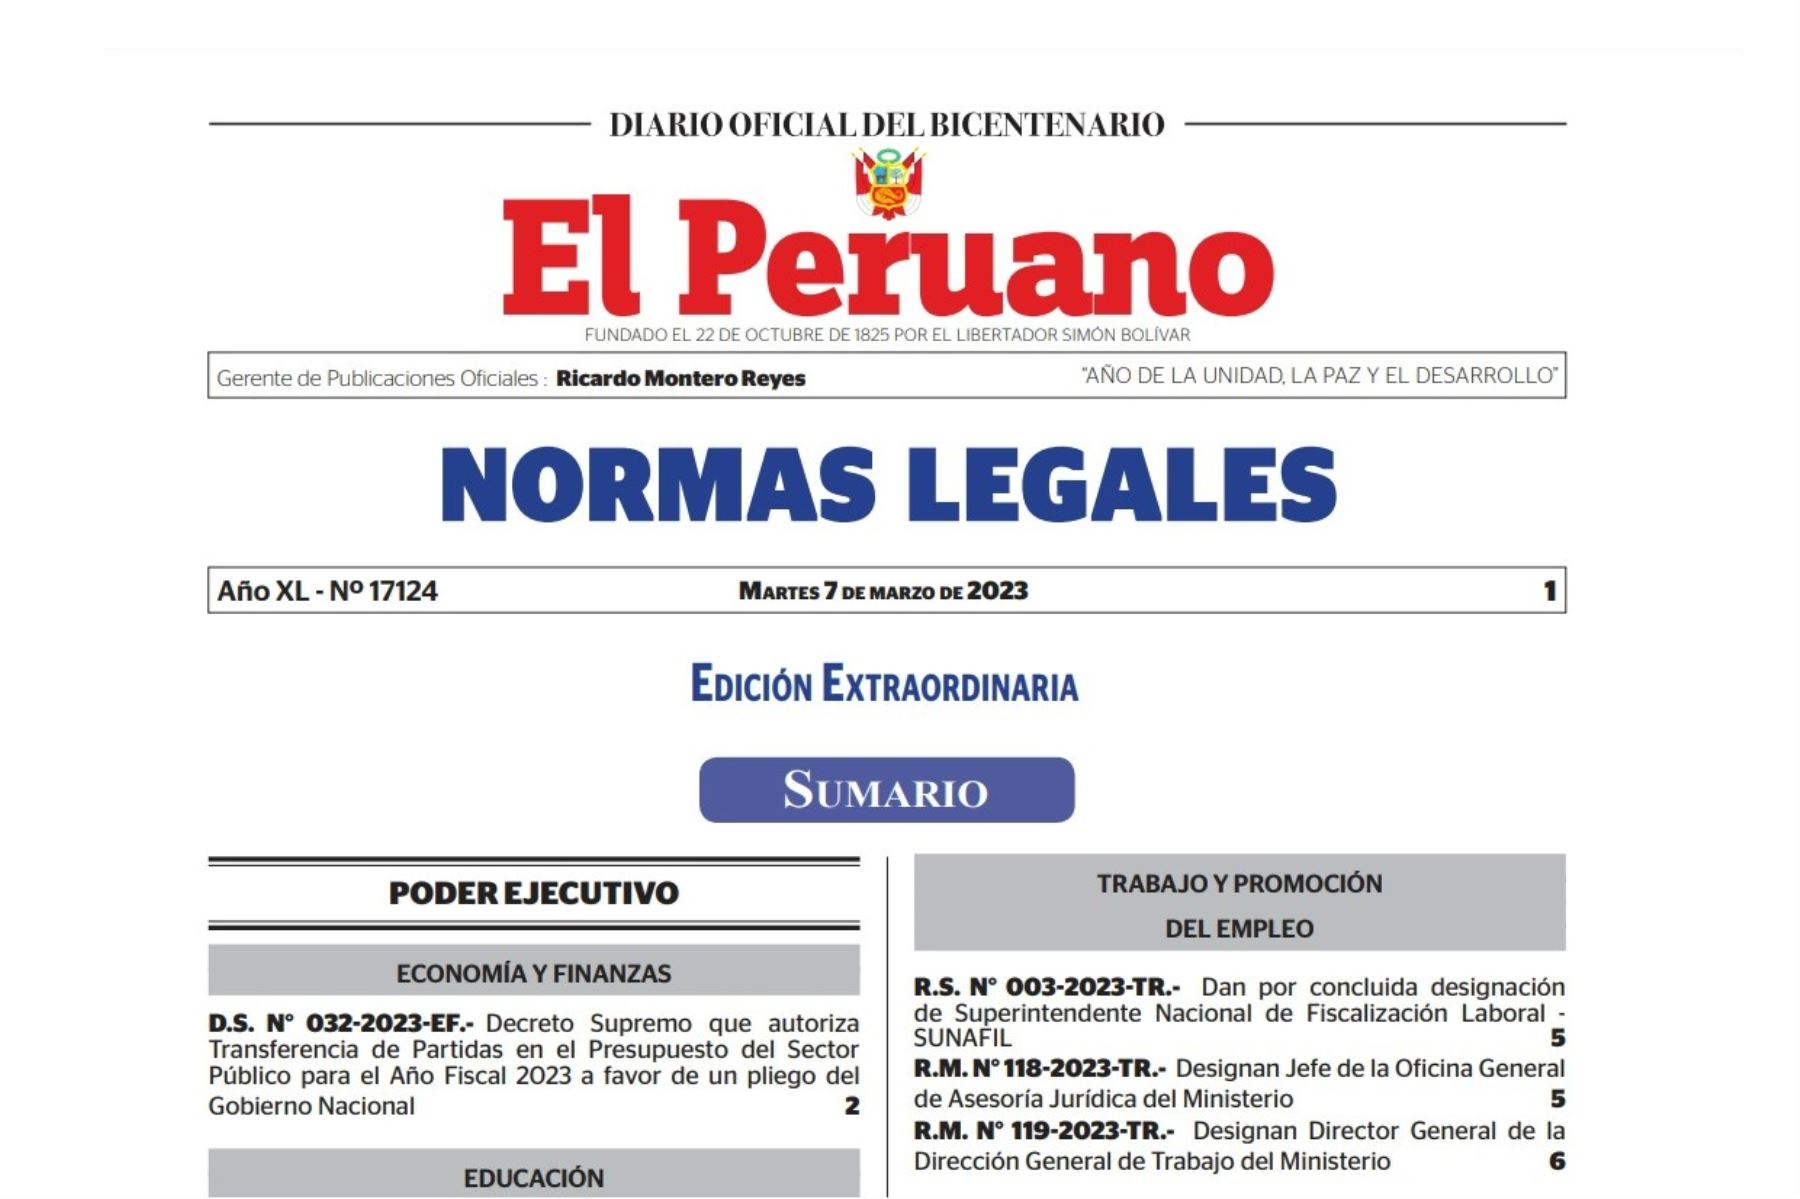 Edición extraordinaria del cuadernillo de Nornas Legales del Diario Oficial El Peruano.